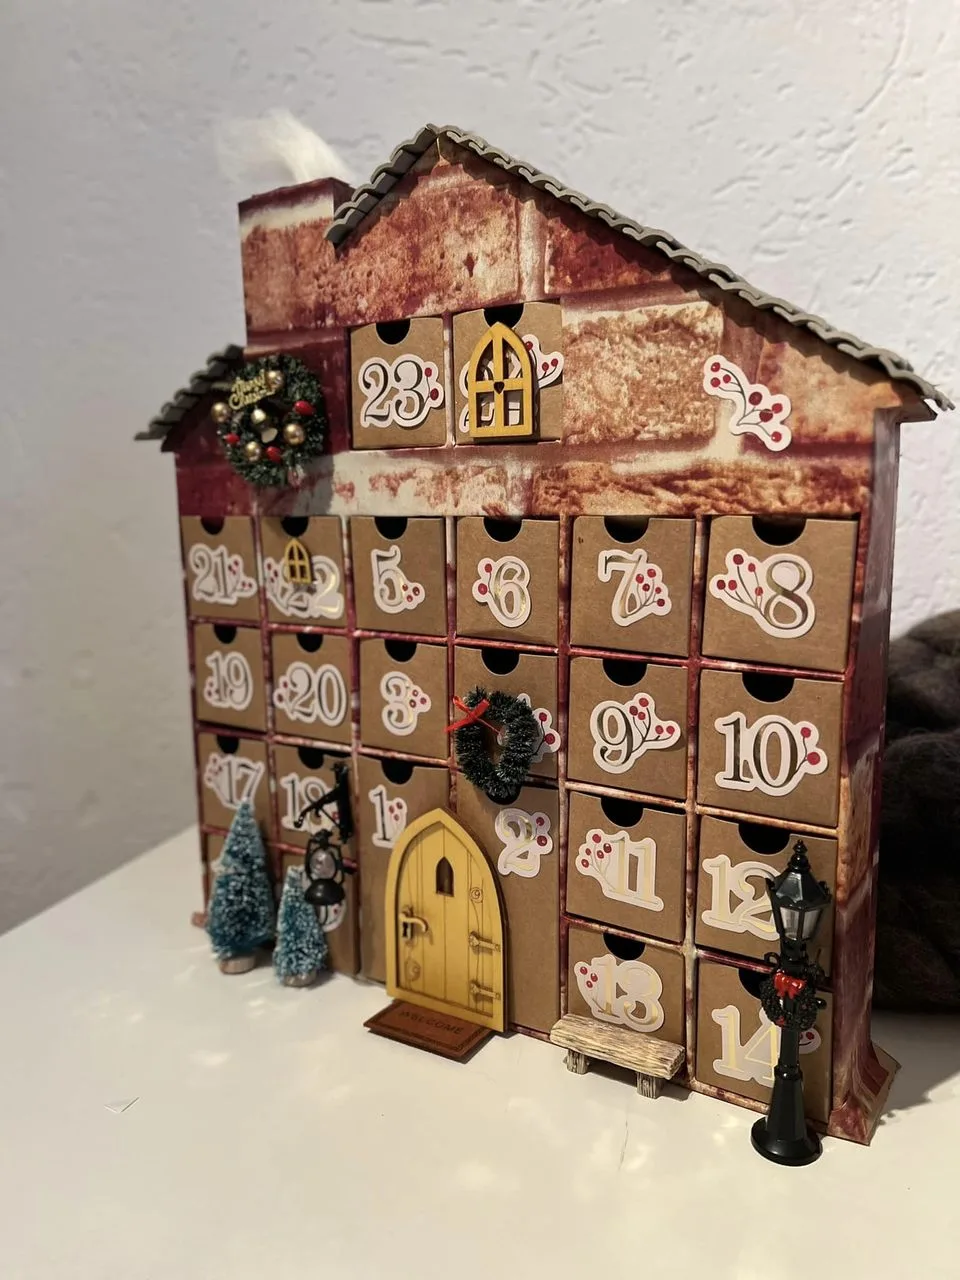 DIY adventhuis knutselbox versierd door member Janet met kerstboompjes als decoratie.